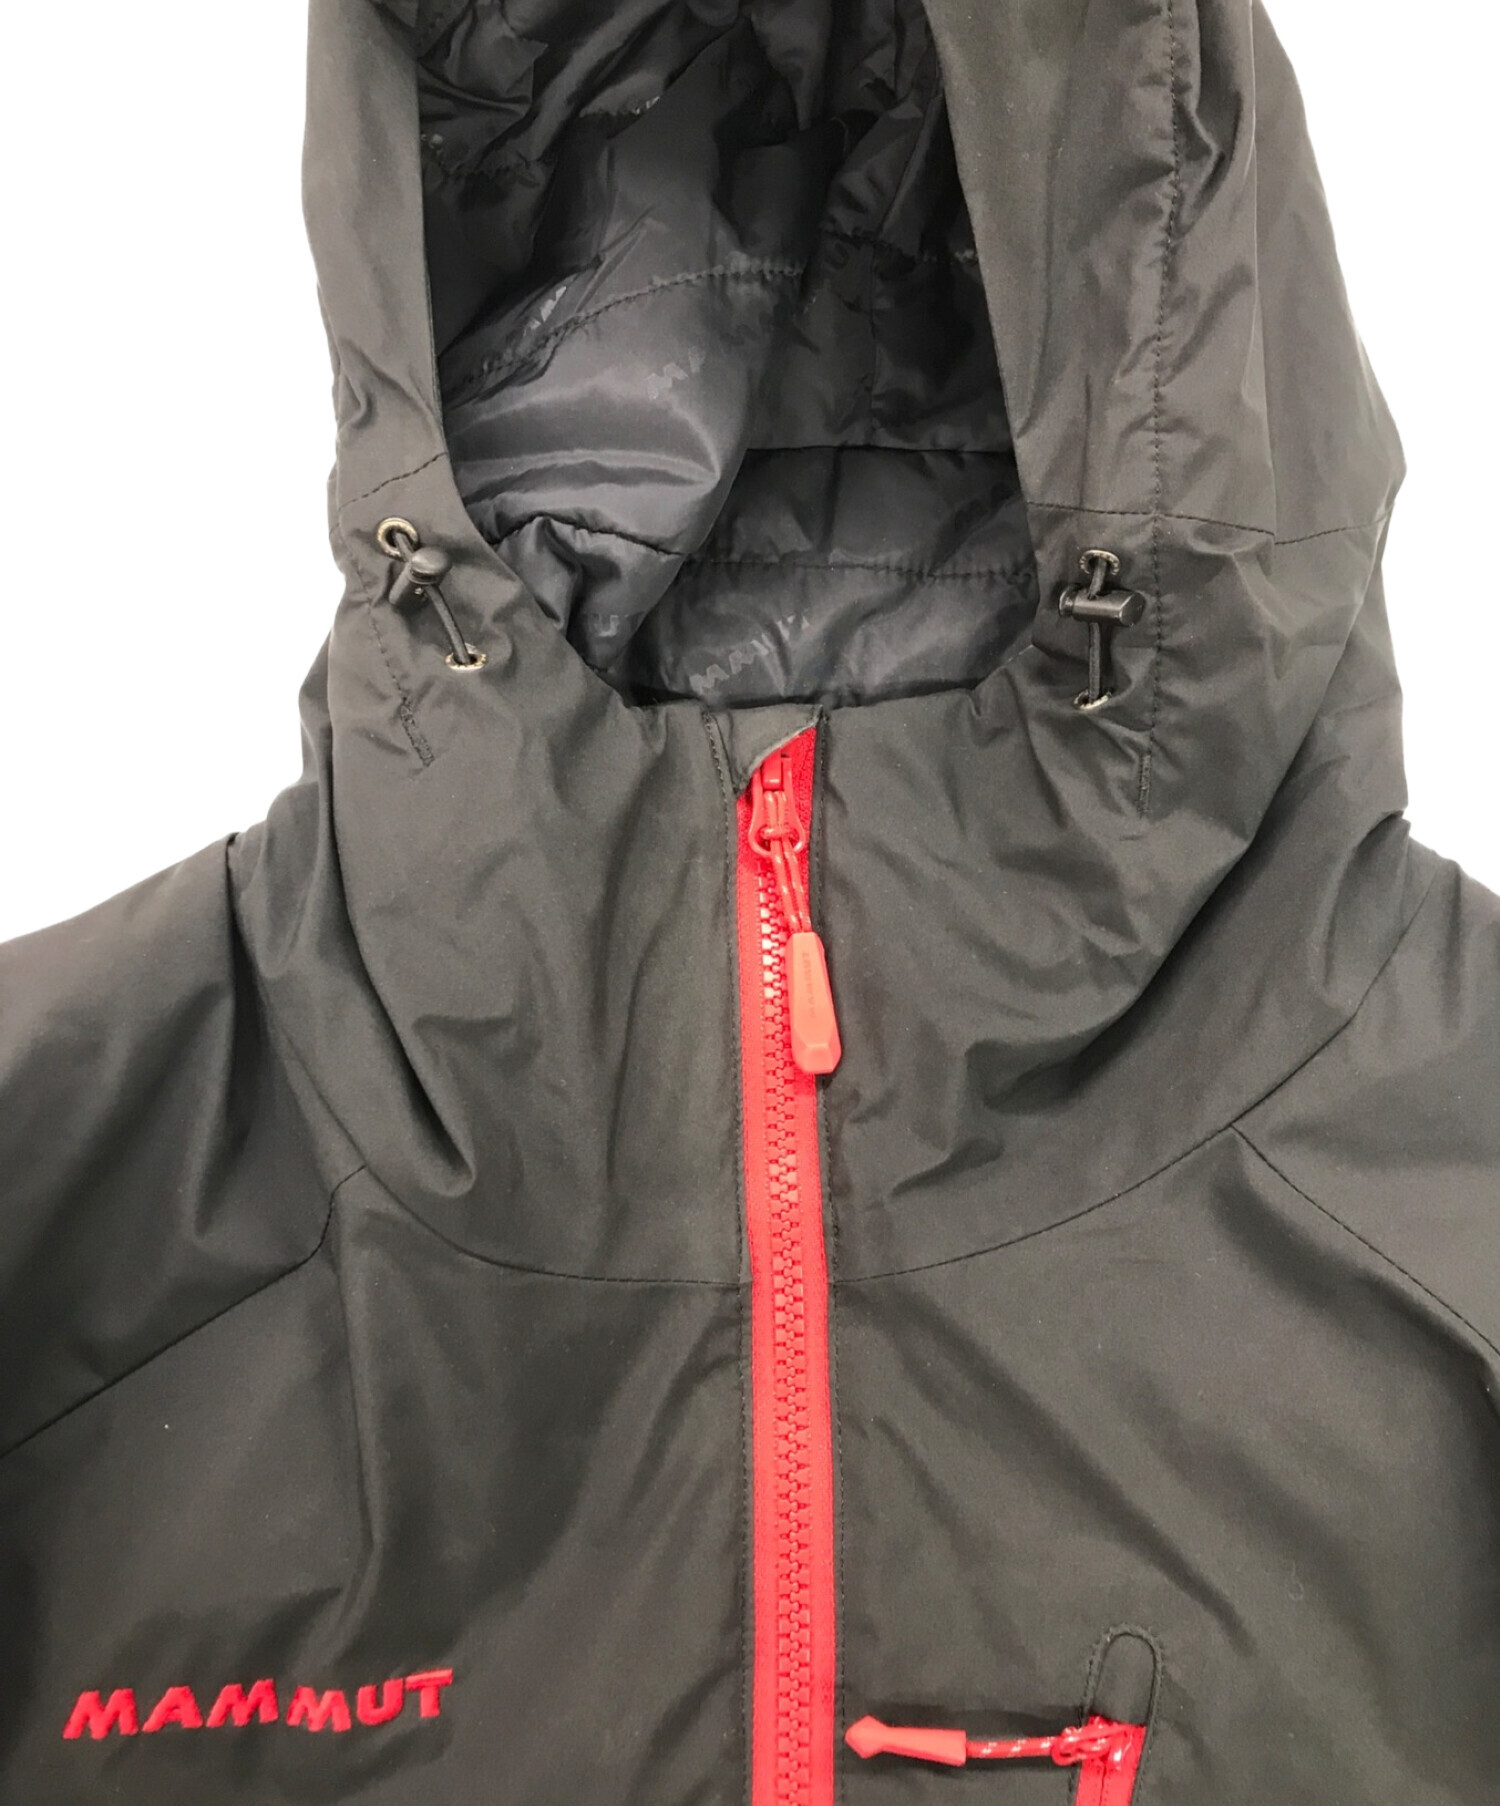 MAMMUT (マムート) Winter Trail Jacket/ウィンタートレイルジャケット ブラック×レッド サイズ:L